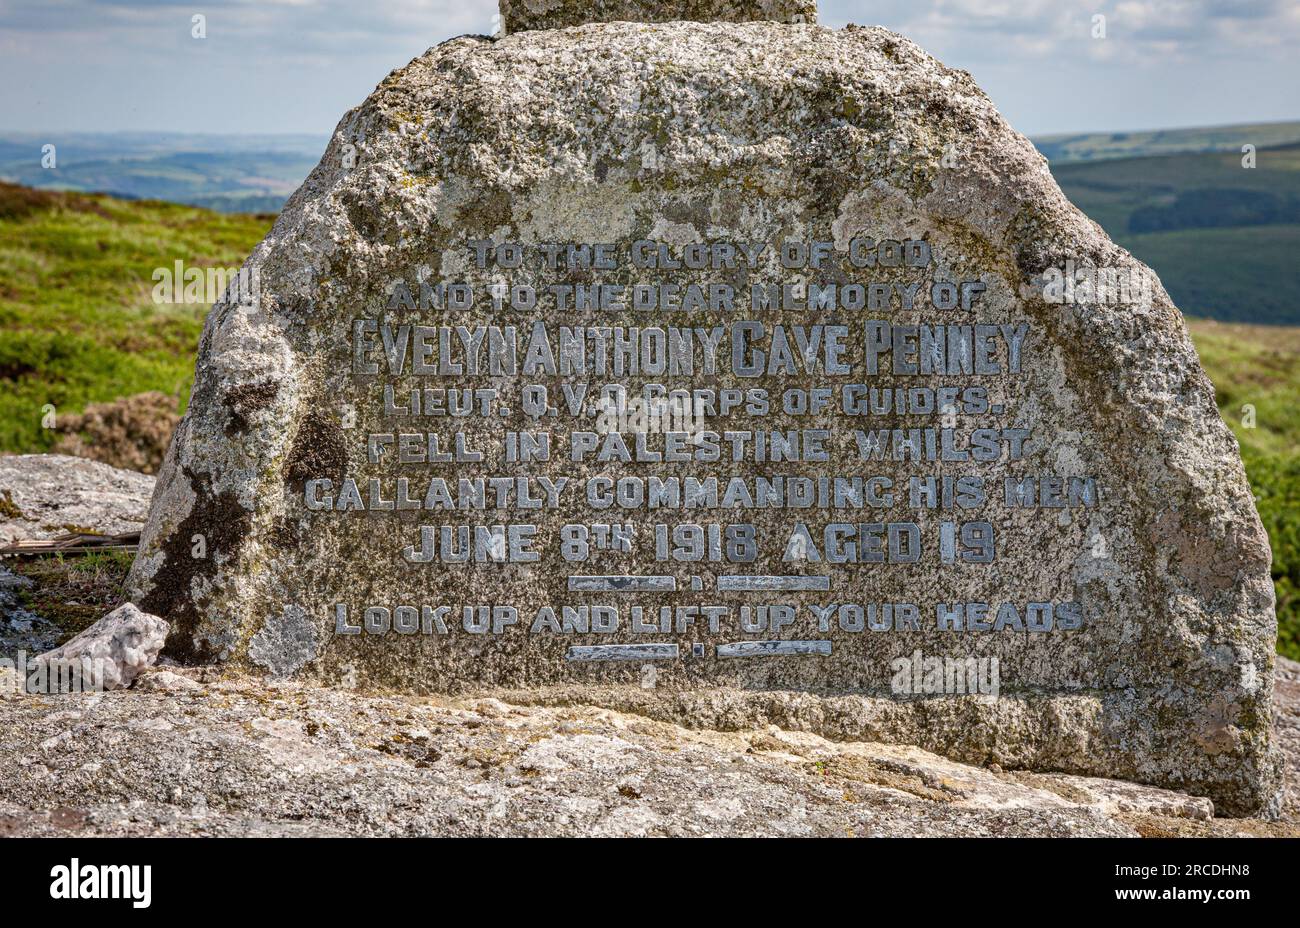 Il memoriale Evelyn Anthony Cave Penney si trova vicino a Yar Tor su Dartmoor Devon UK Foto Stock